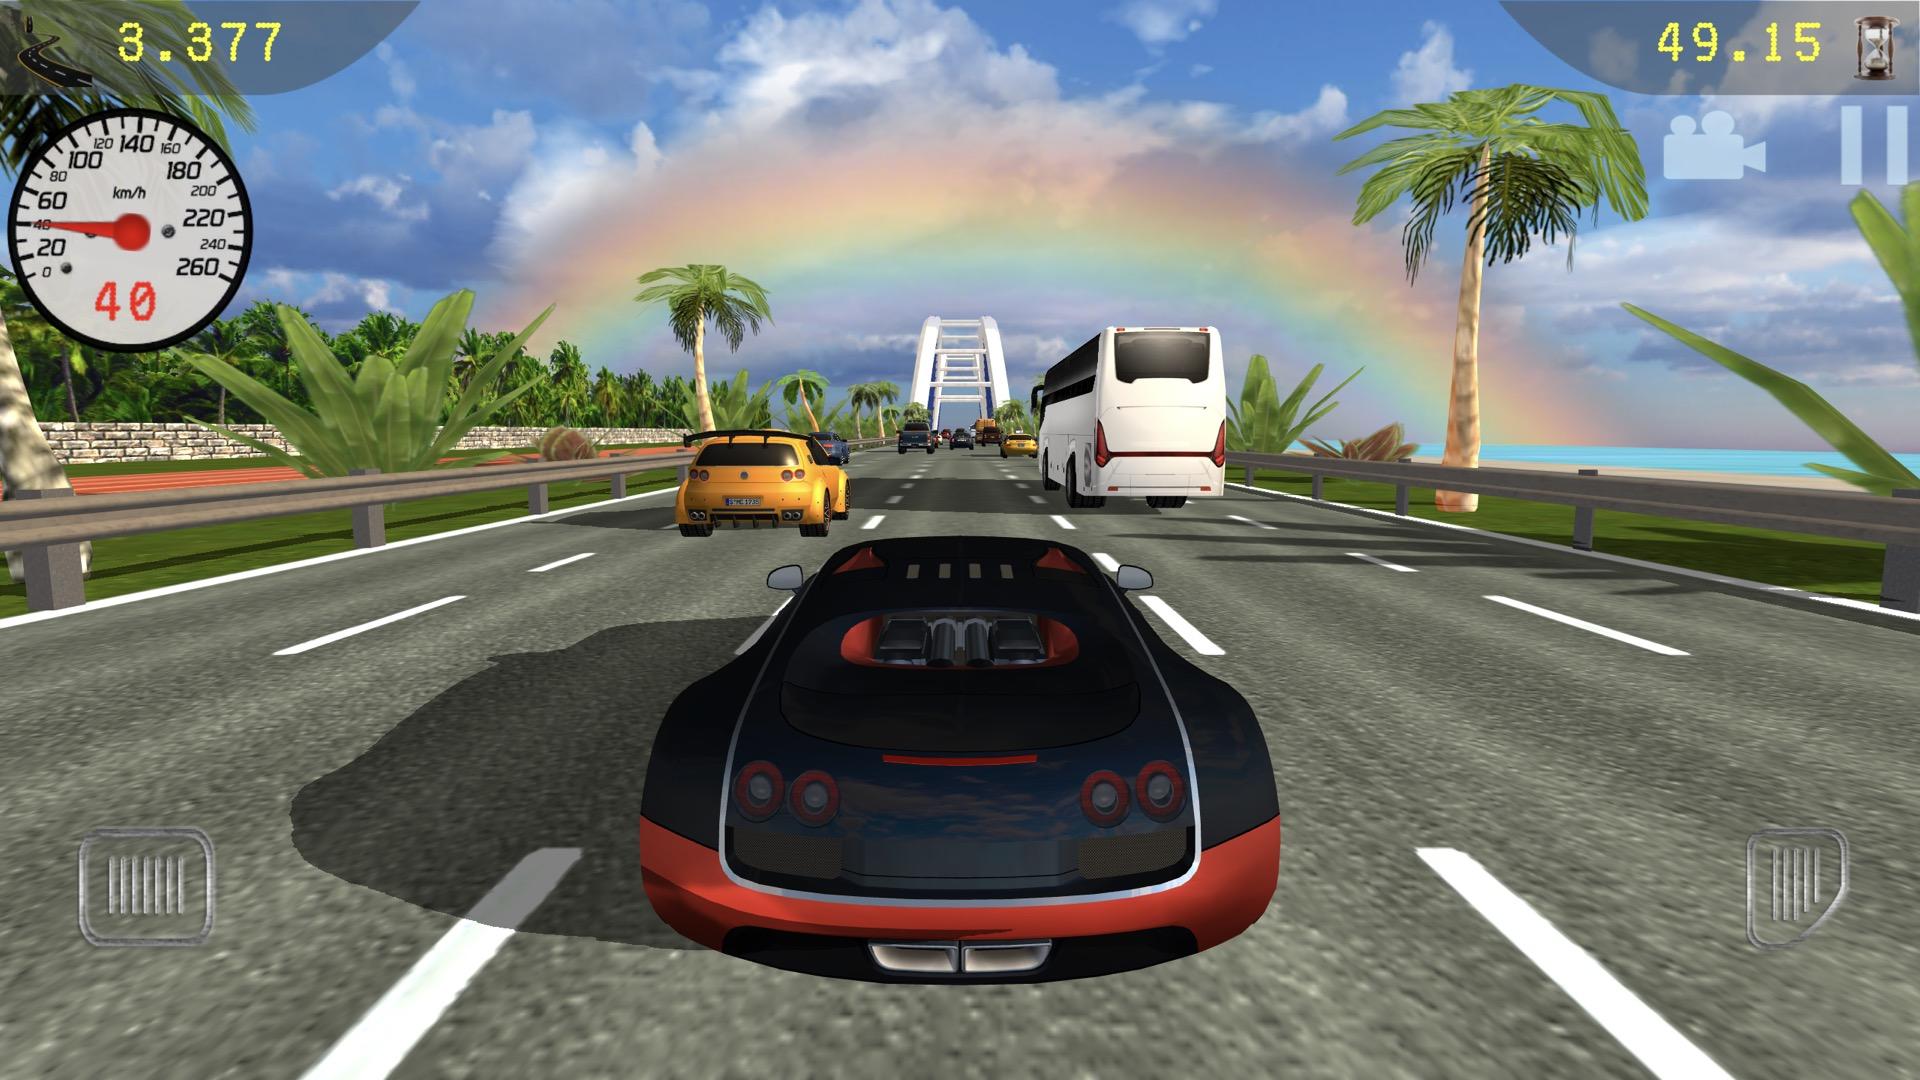 Screenshot 1 of เป้าหมายการแข่งรถ 13.0